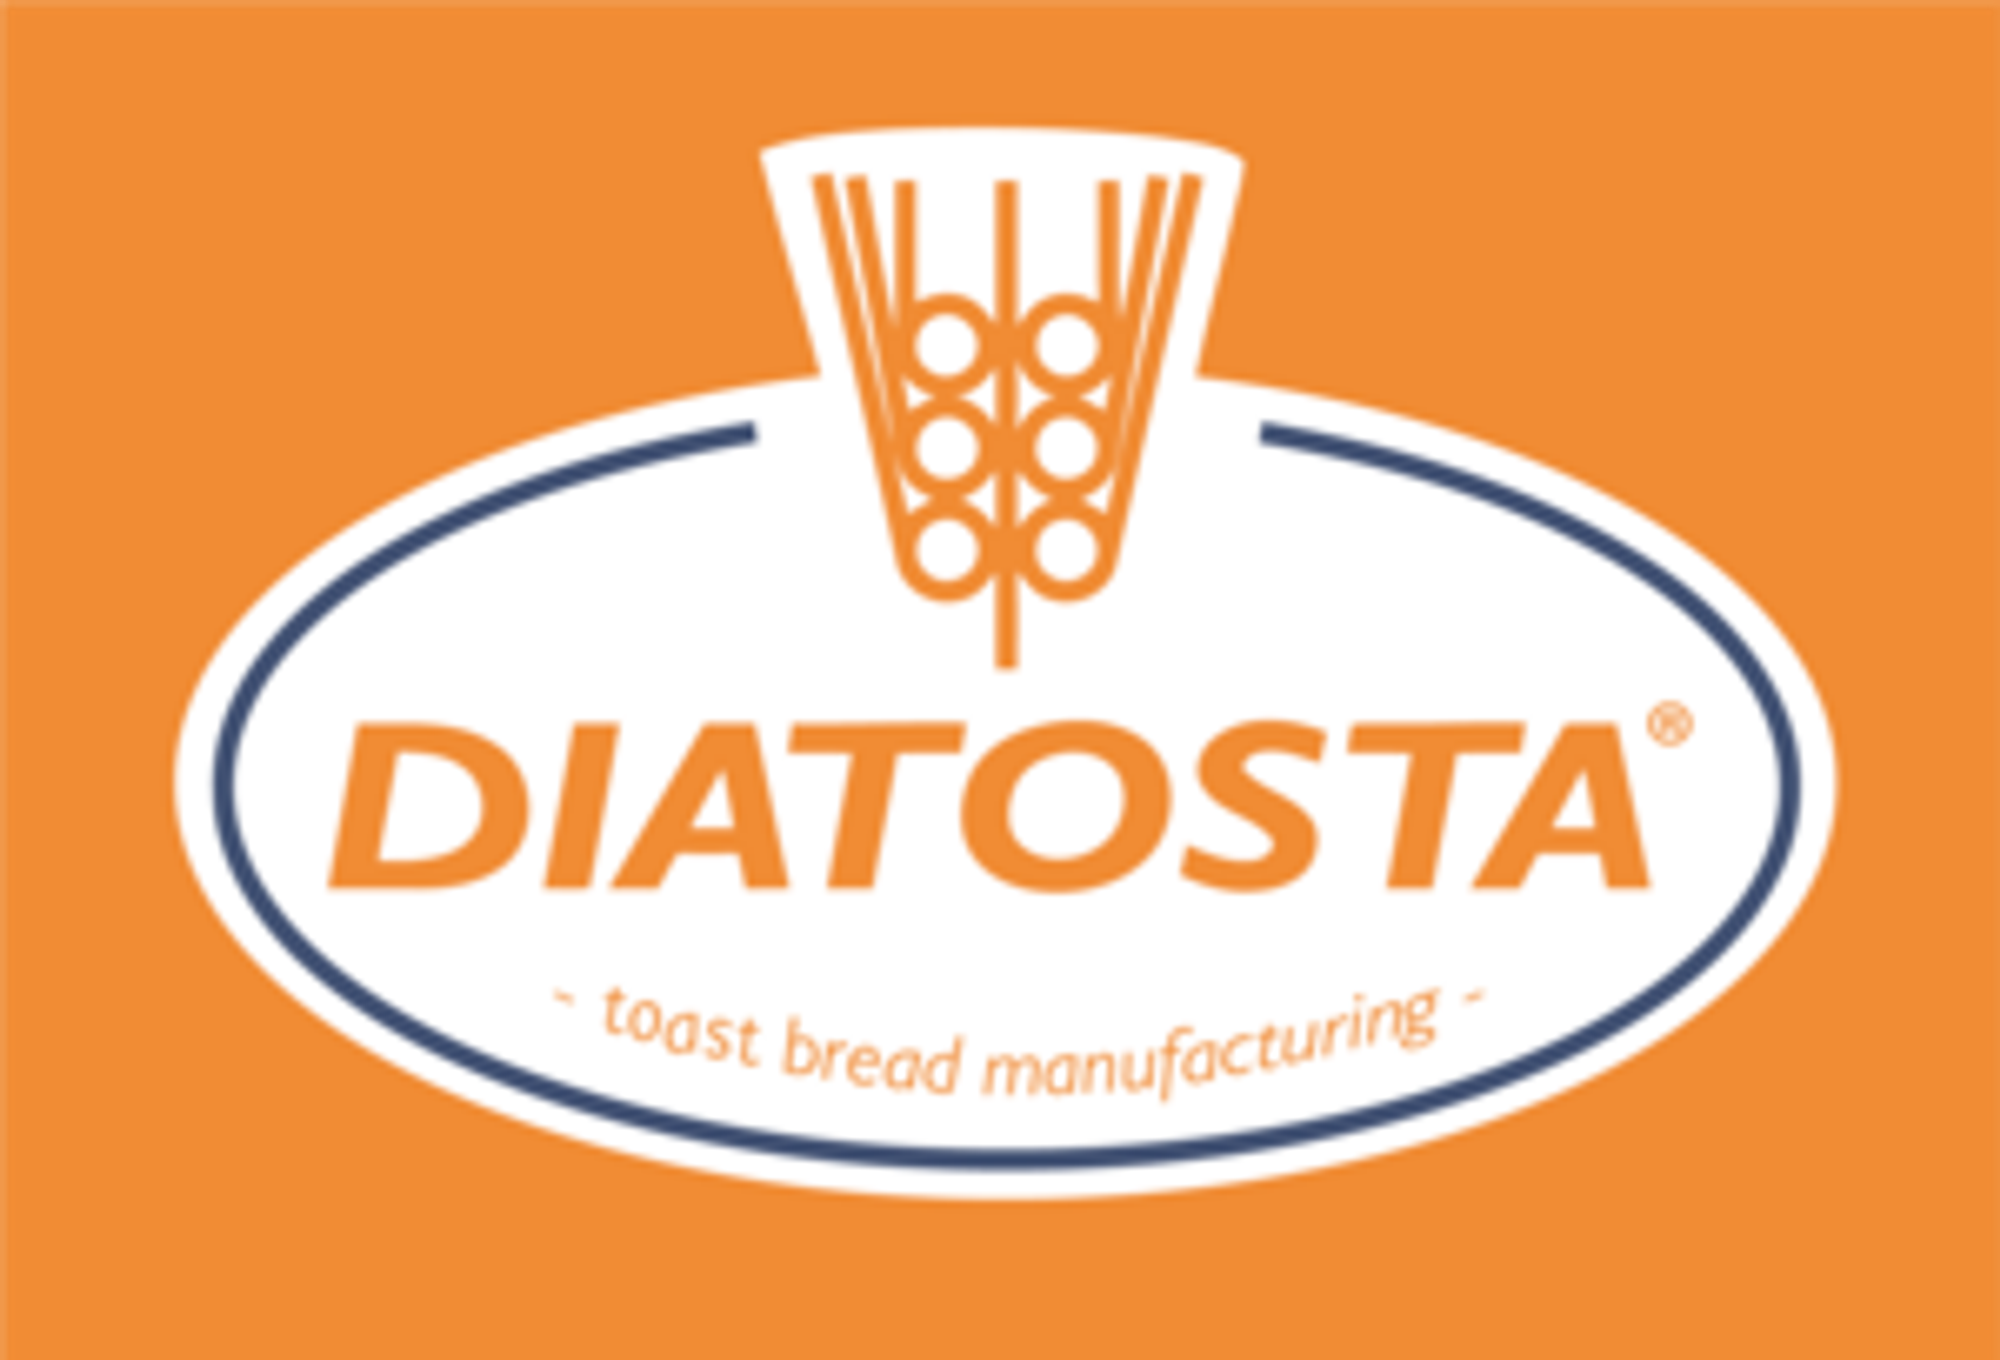 diatosta-logo-162E638D81-seeklogo.com.png